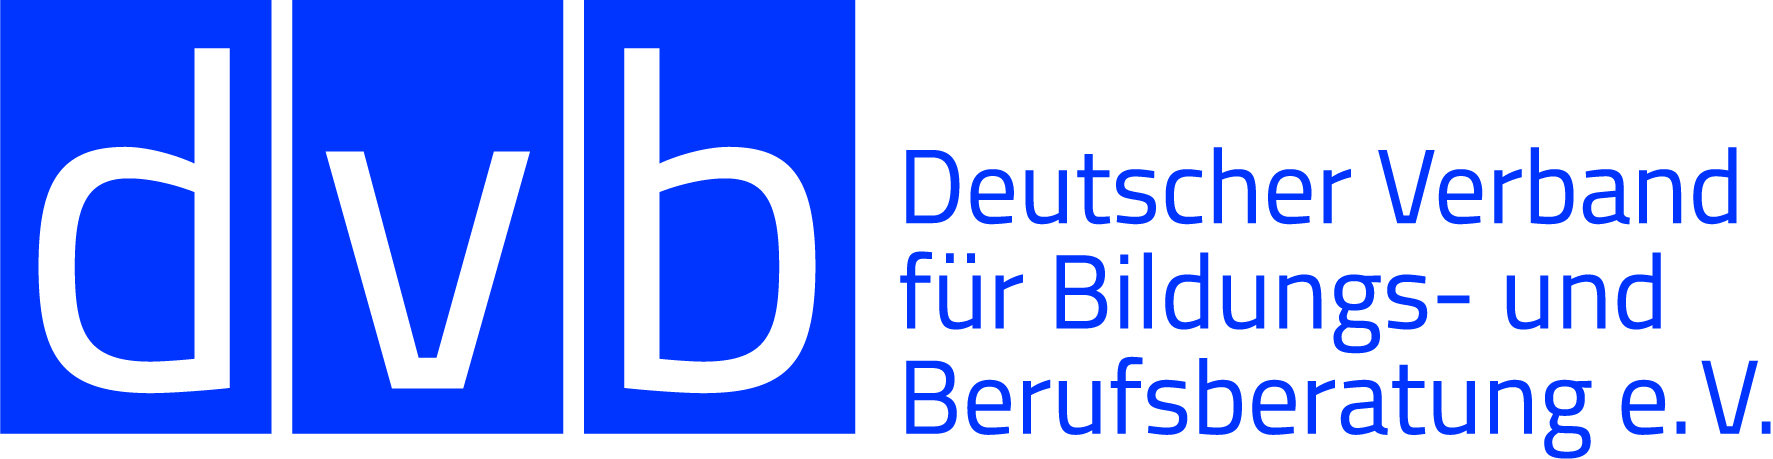 Deutscher Verband für Bildungs- und Berufsberatung e.V